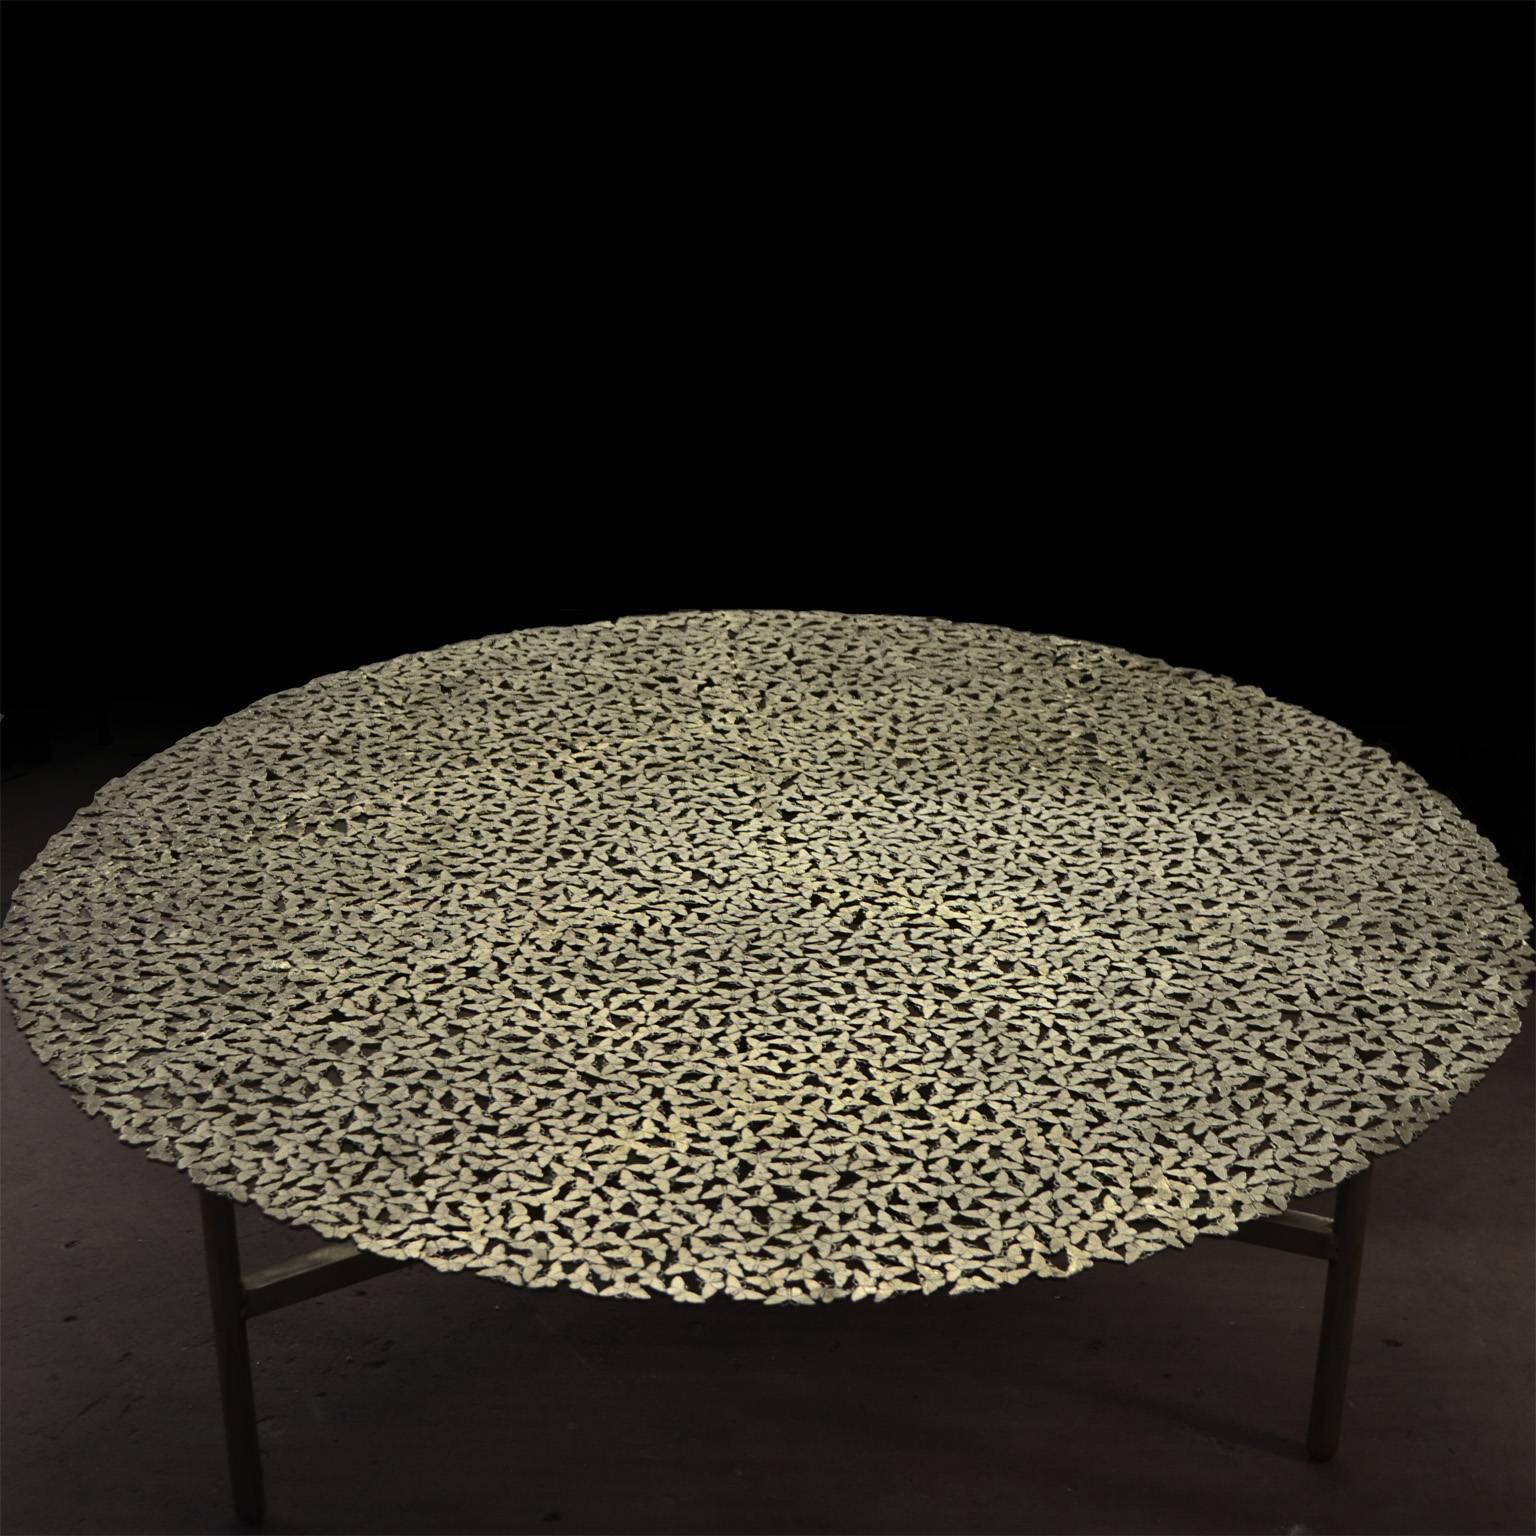 Une nuée de papillons aussi délicats qu'une nappe en dentelle forme un plateau de table Everlast en bronze blanc, coulé à la cire perdue par des maîtres artisans italiens. Une table sculpturale pour l'intérieur et l'extérieur.

Cette liste est pour